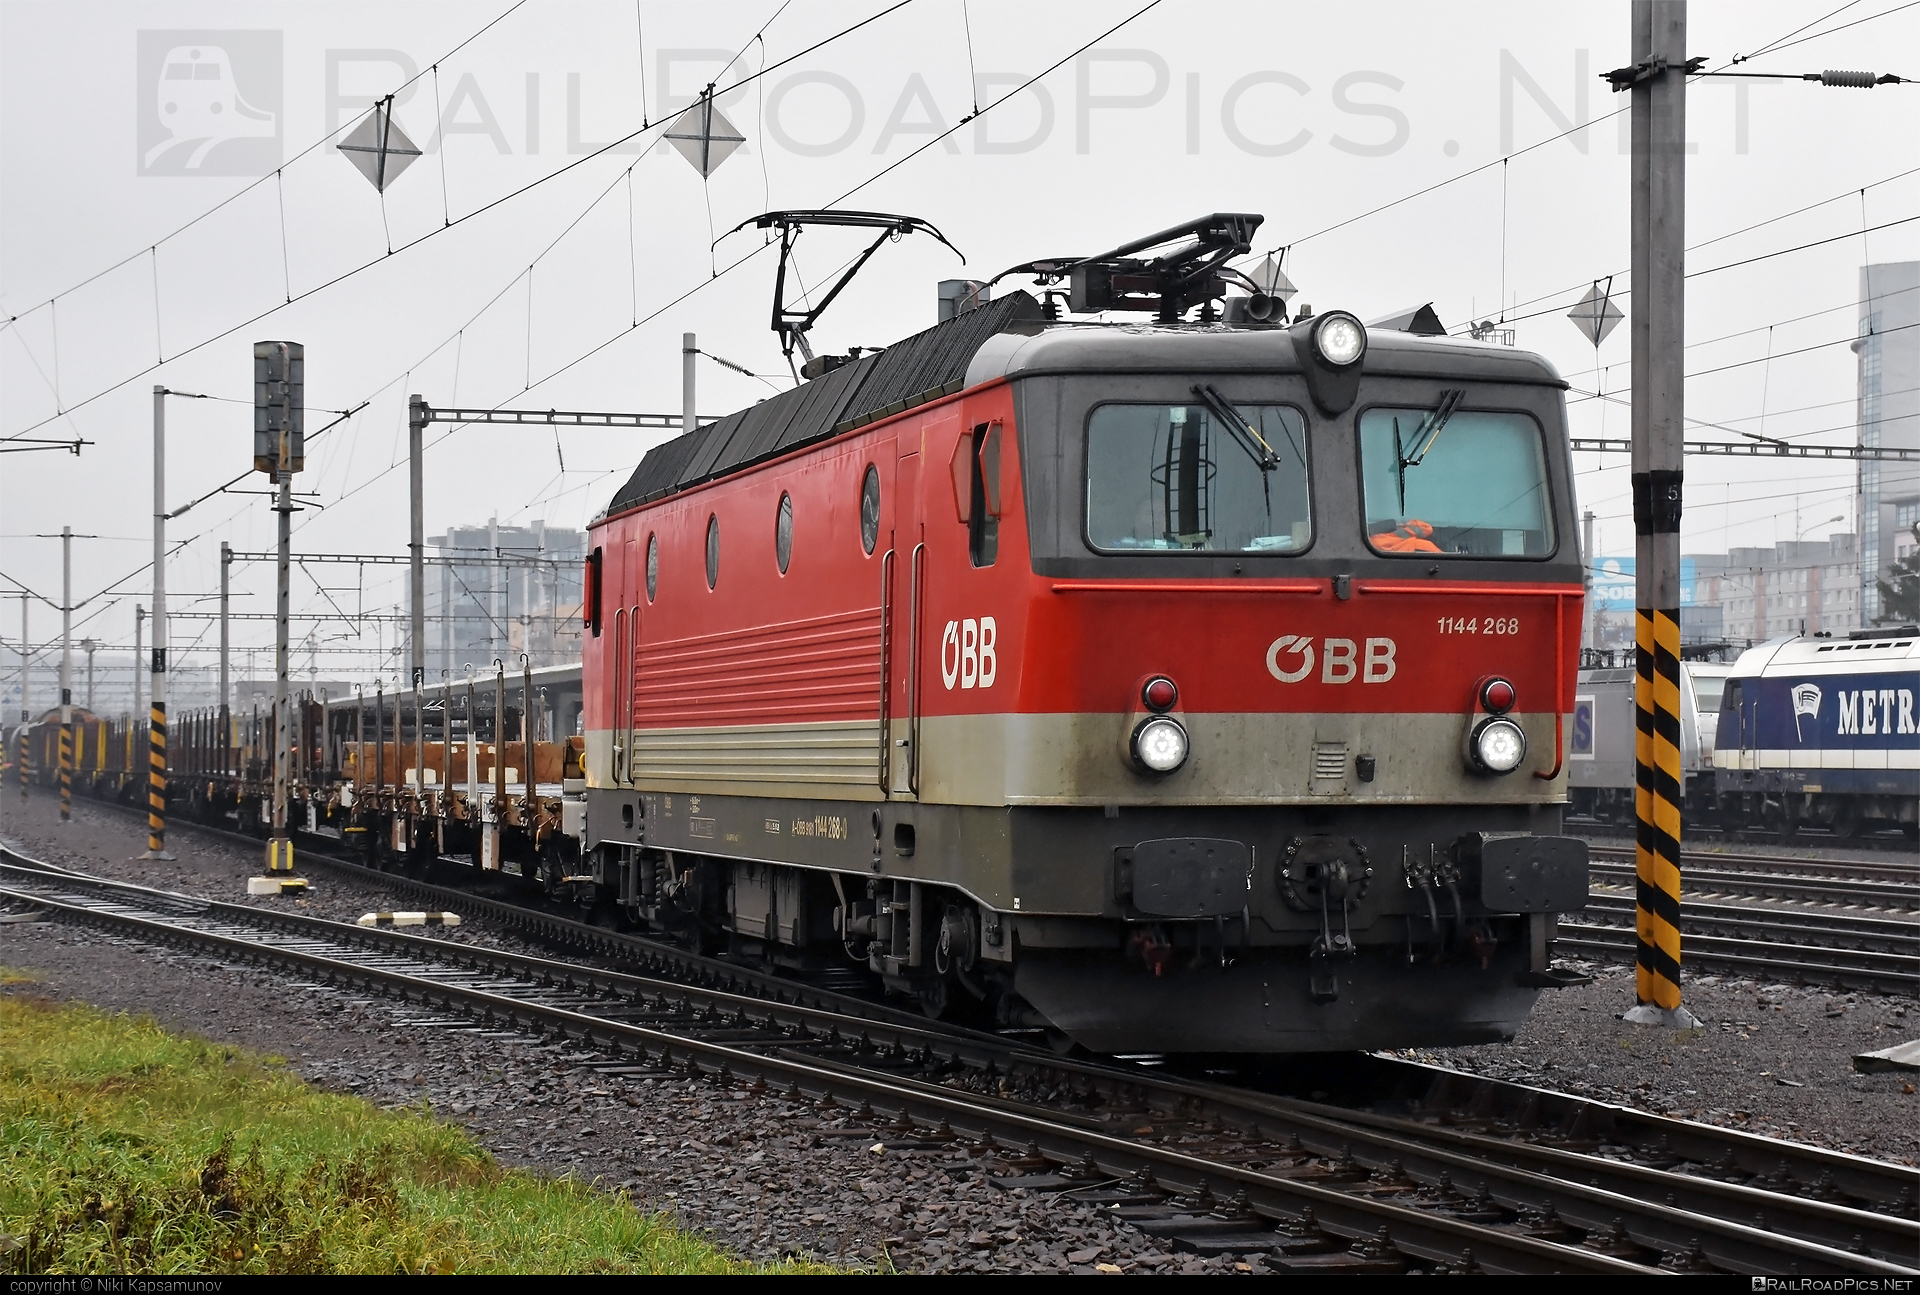 SGP ÖBB Class 1144 - 1144 268 operated by Rail Cargo Austria AG #obb #obb1144 #obbClass1144 #osterreichischebundesbahnen #rcw #sgp #sgp1144 #simmeringgrazpauker